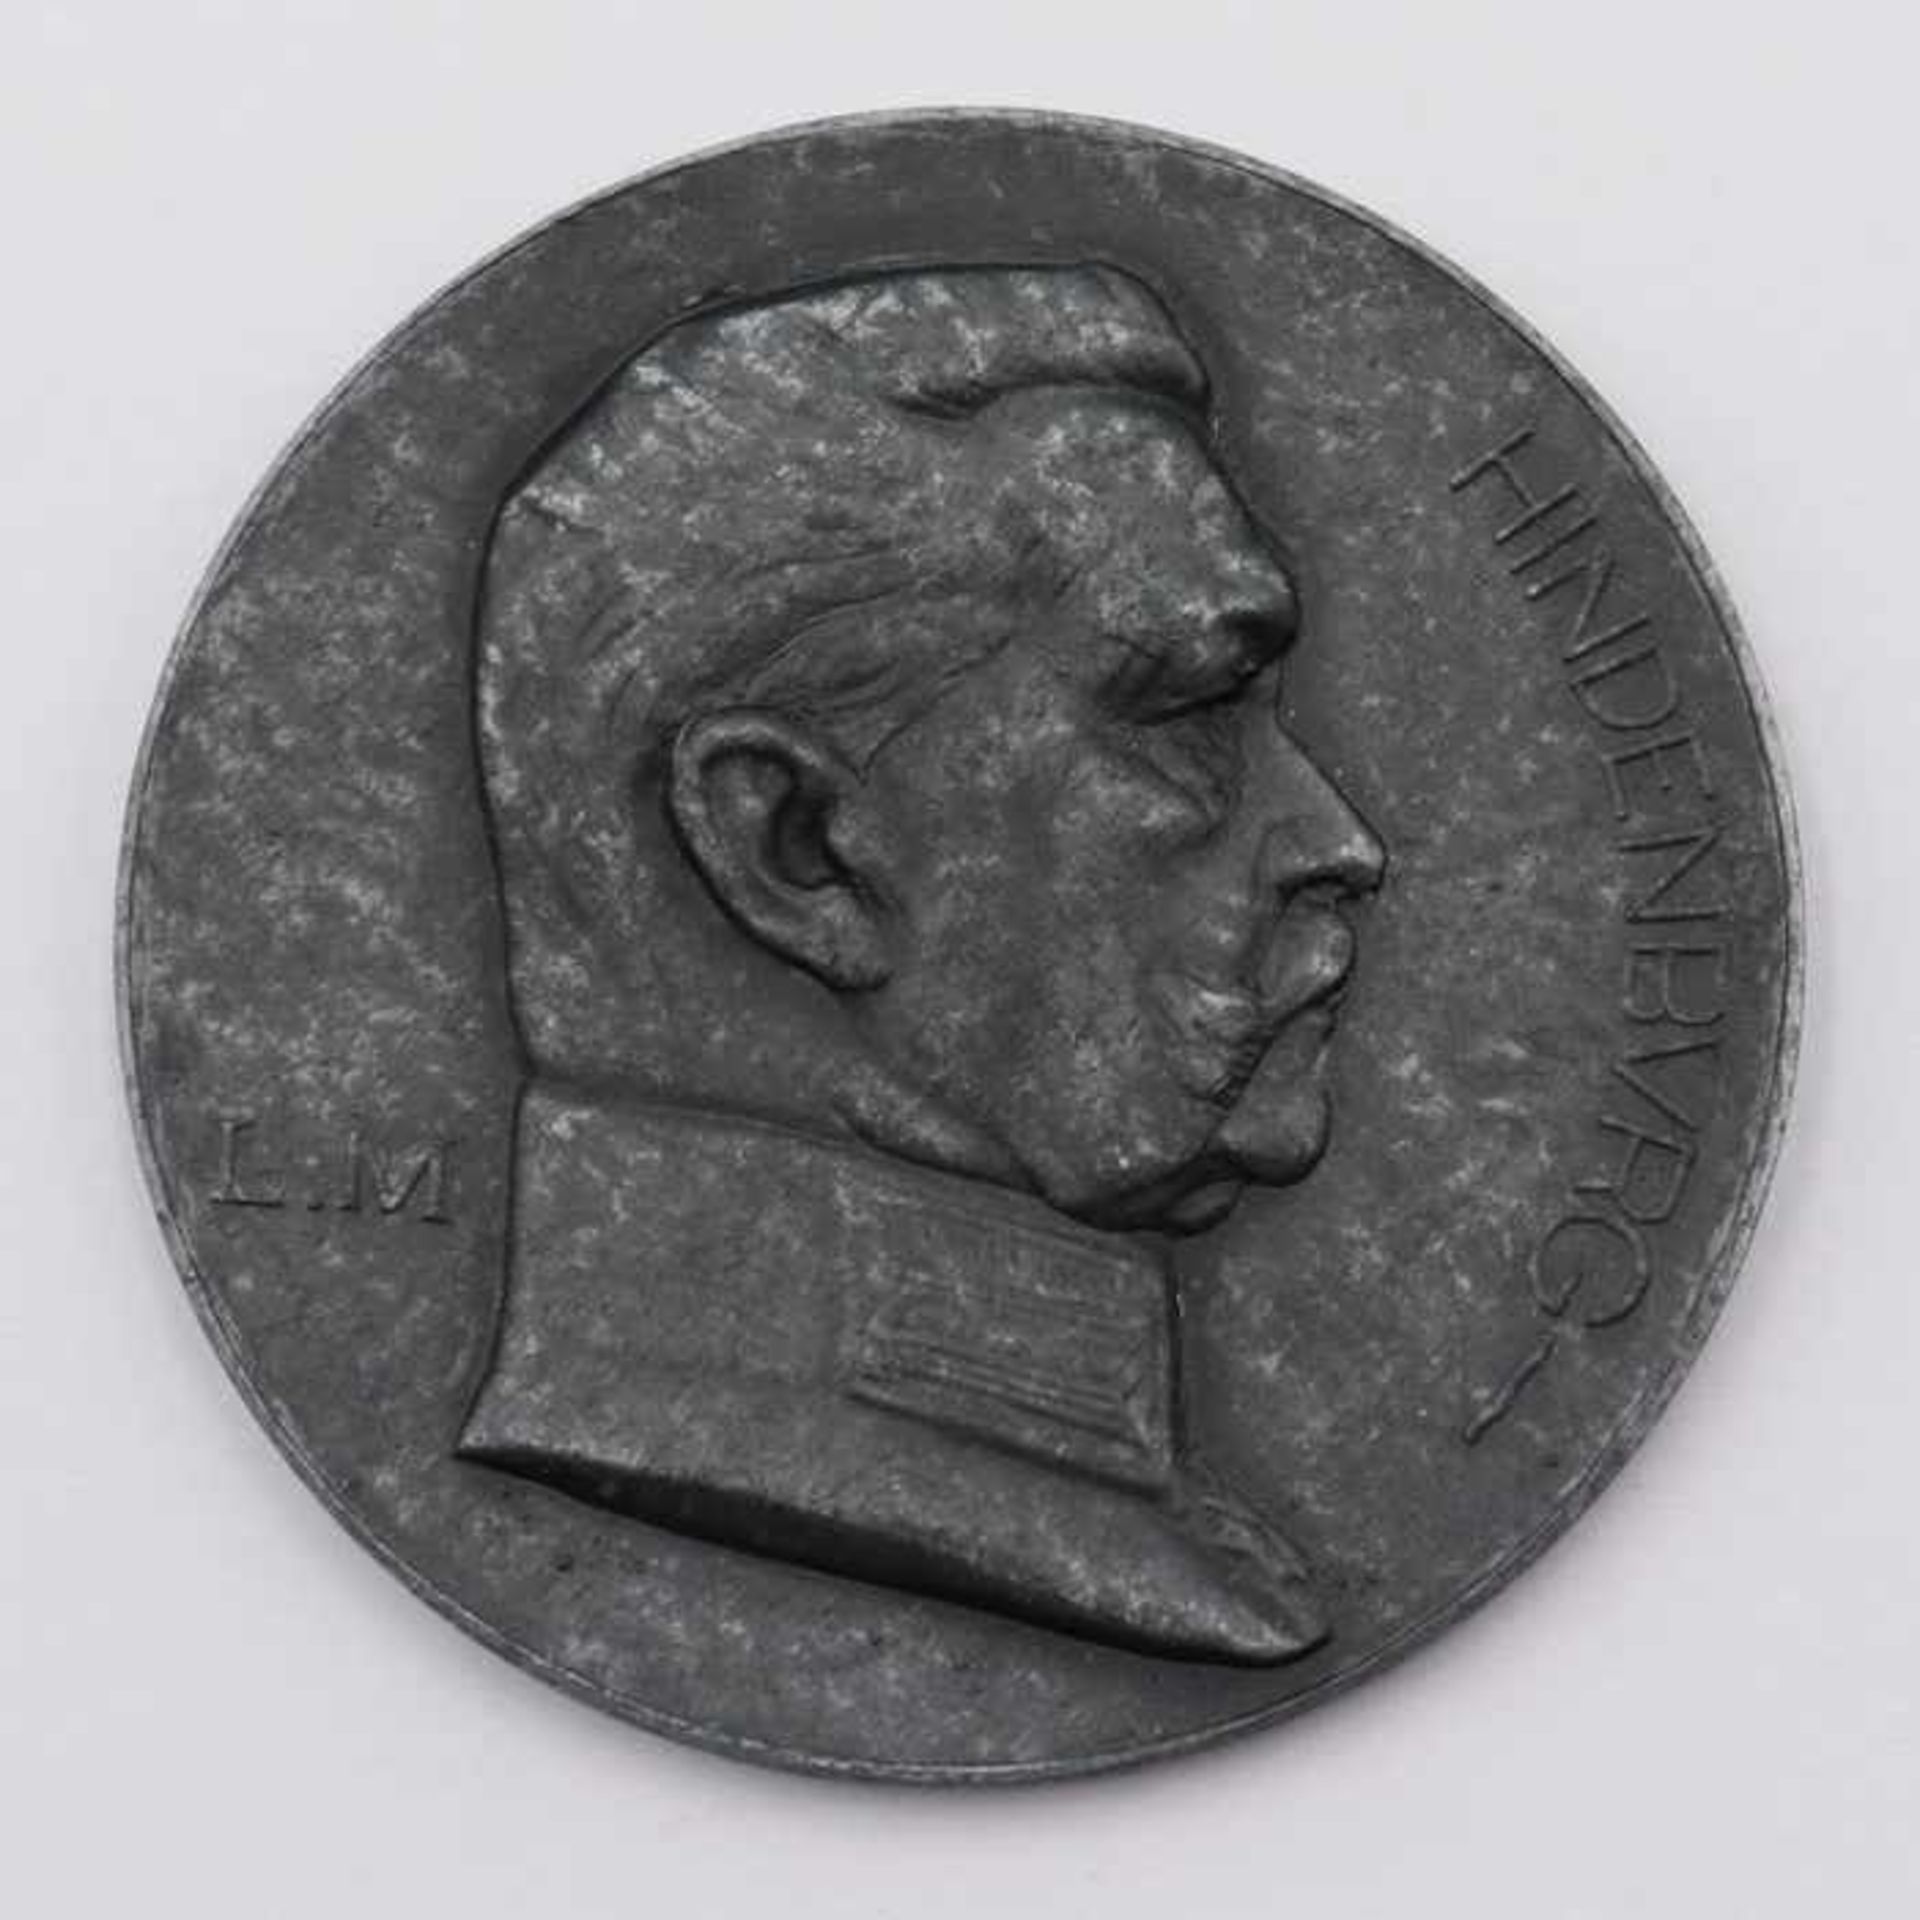 Medaille HindenburgL.M., rs. 2 Oktober 1927, Schützenmedaille, G 34g, D 5 cm, vz- - -20.00 % buyer's